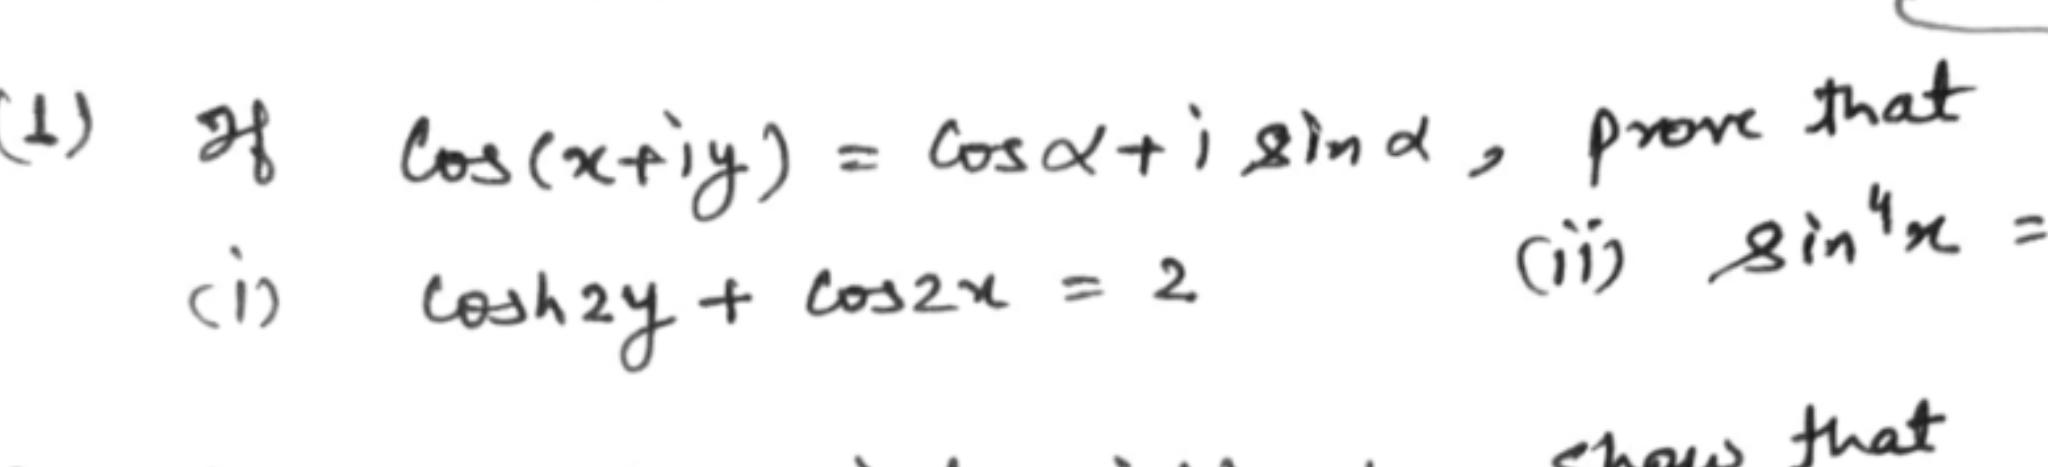 (+) of cos(xriy) = cosa+isind, prove cis coshry+ cosh2y + cos2x = 2 prove that (11) sin